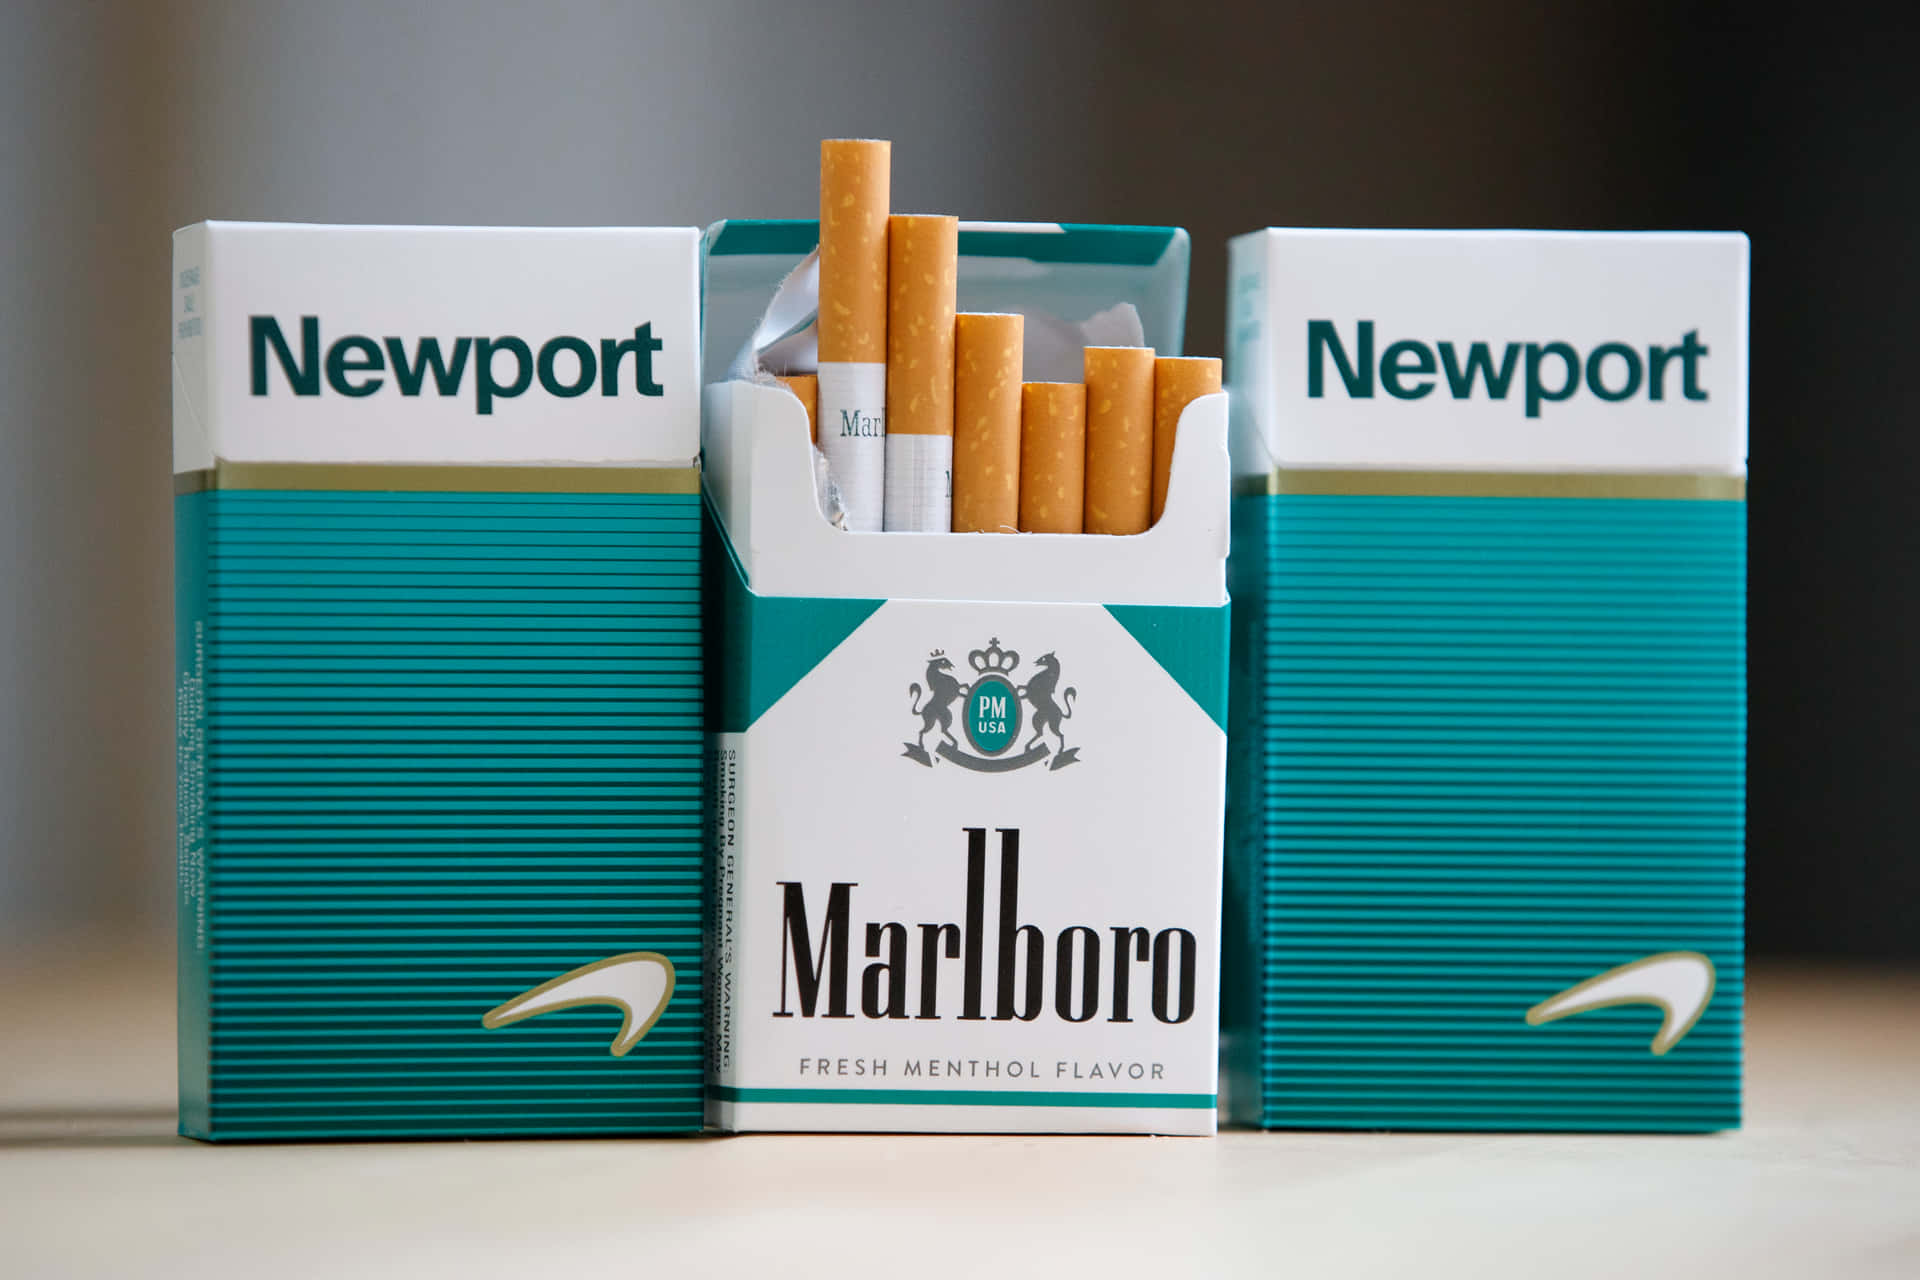 Cigarette Marlboro Newport Picture